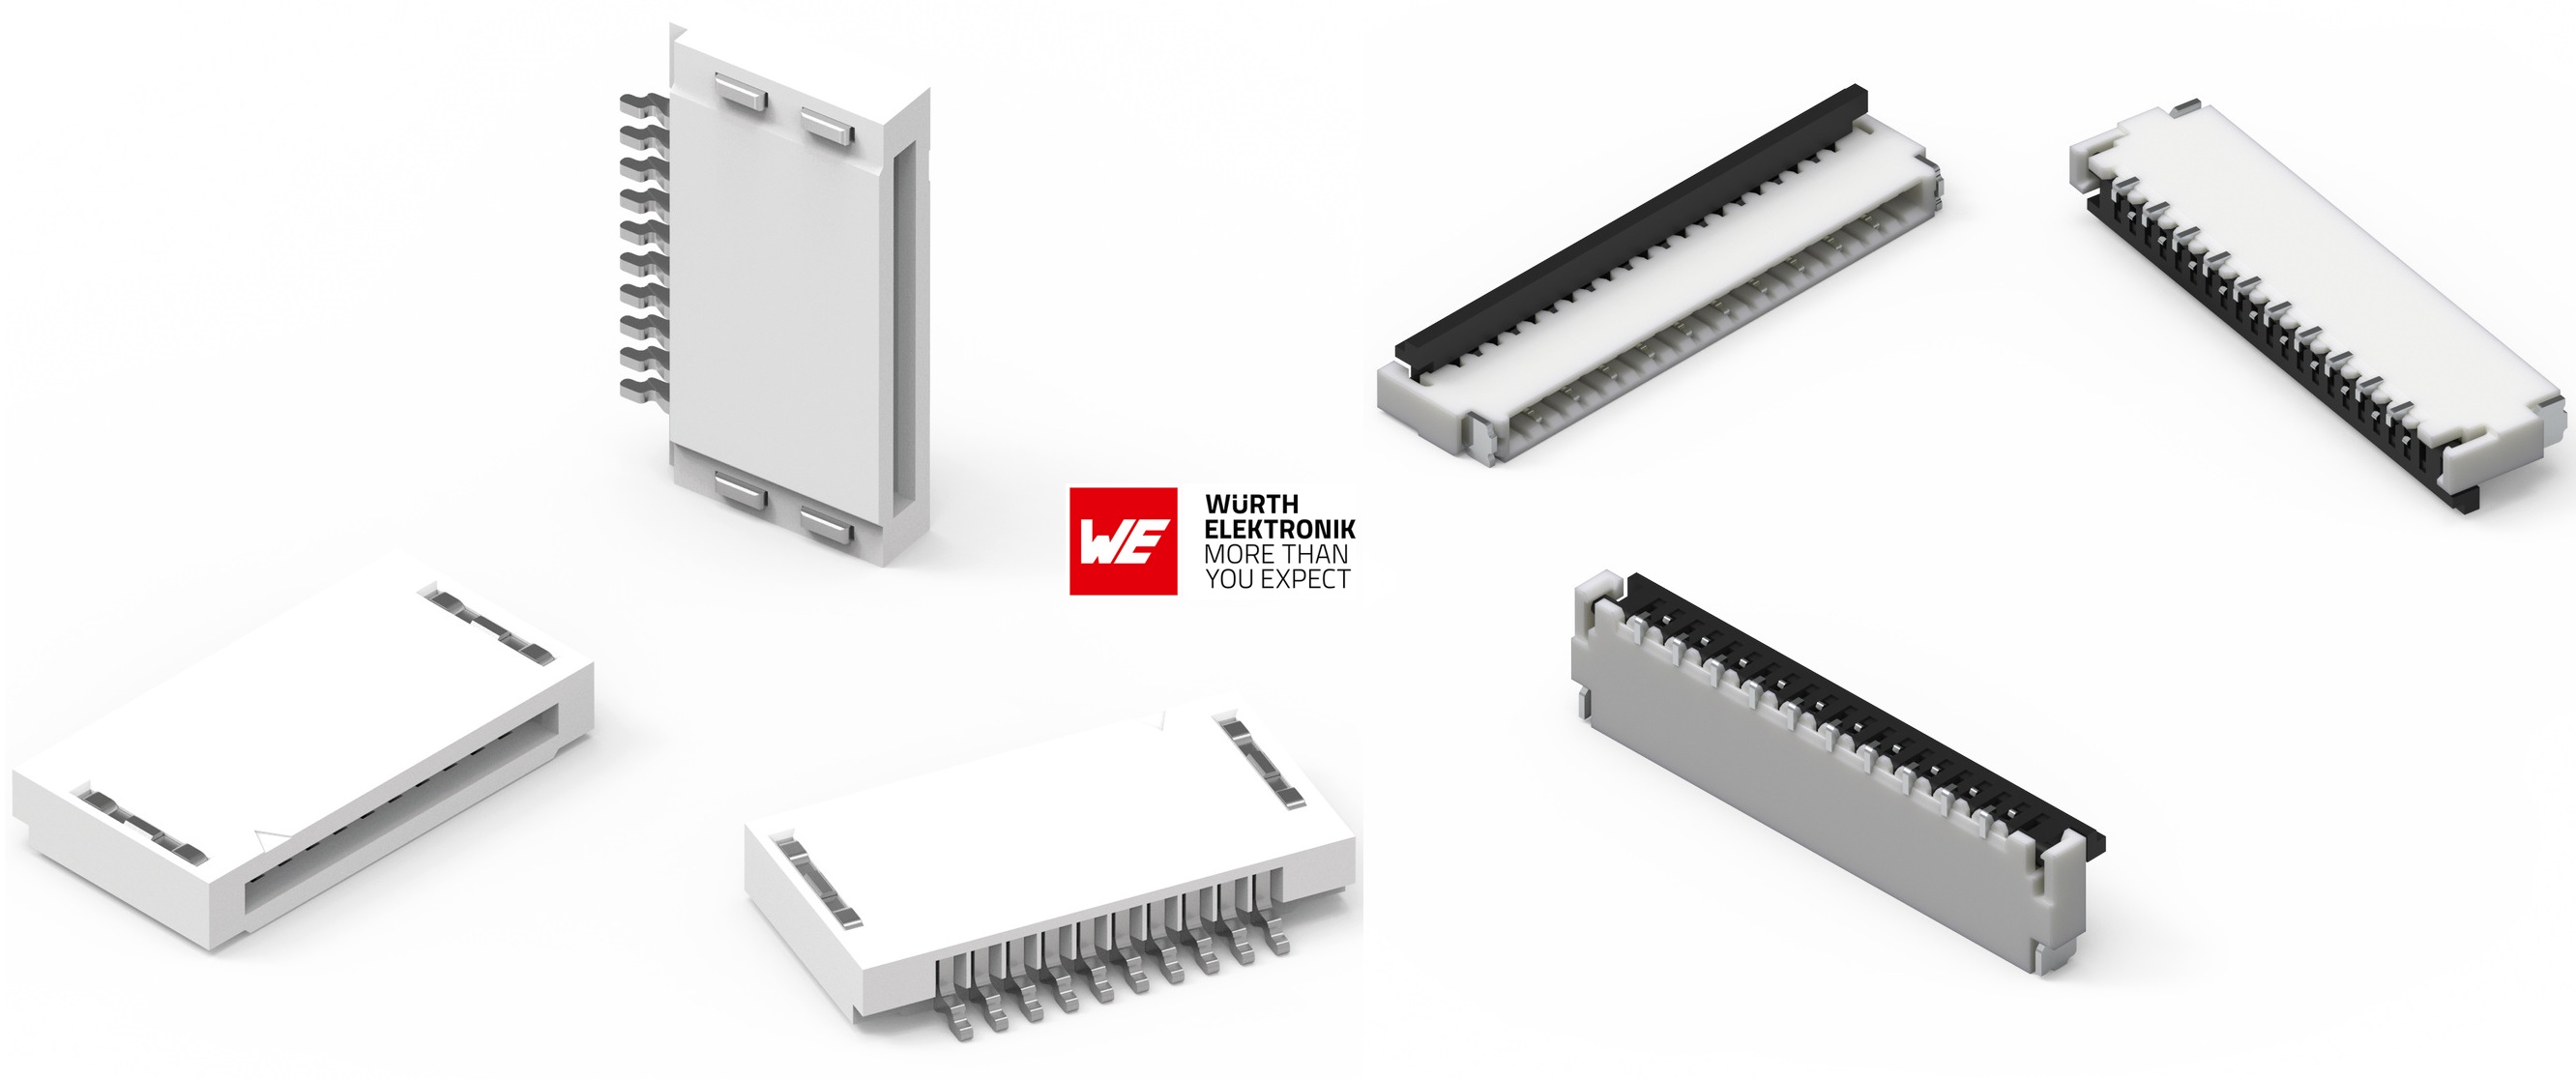 Würth Elektronik presents NEW FPC connectors